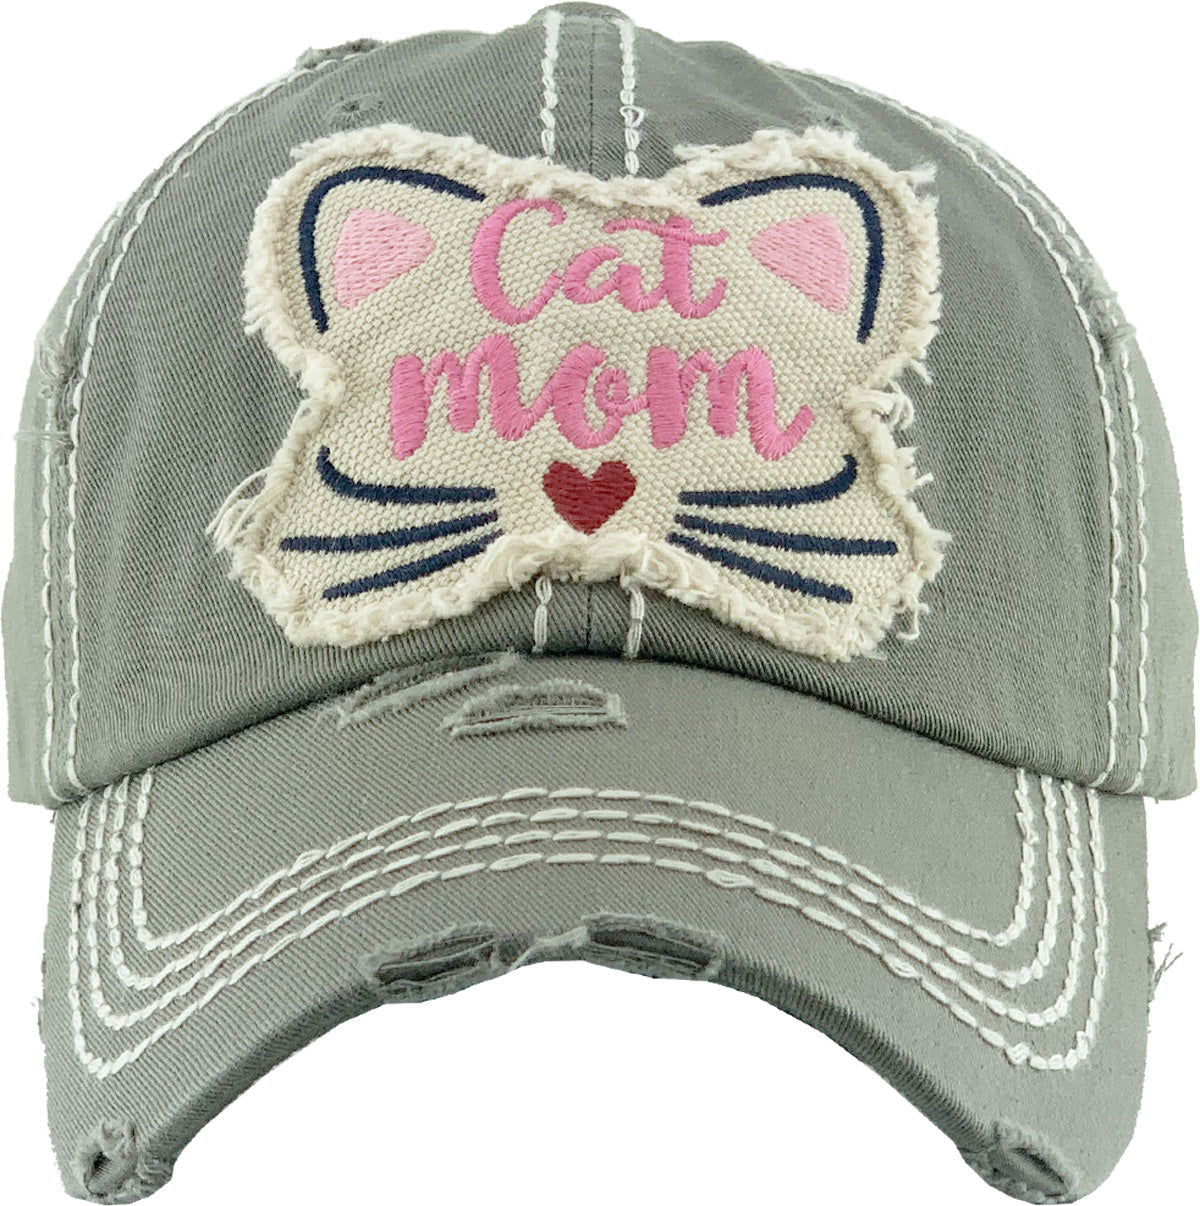 Cat Mom Hat 